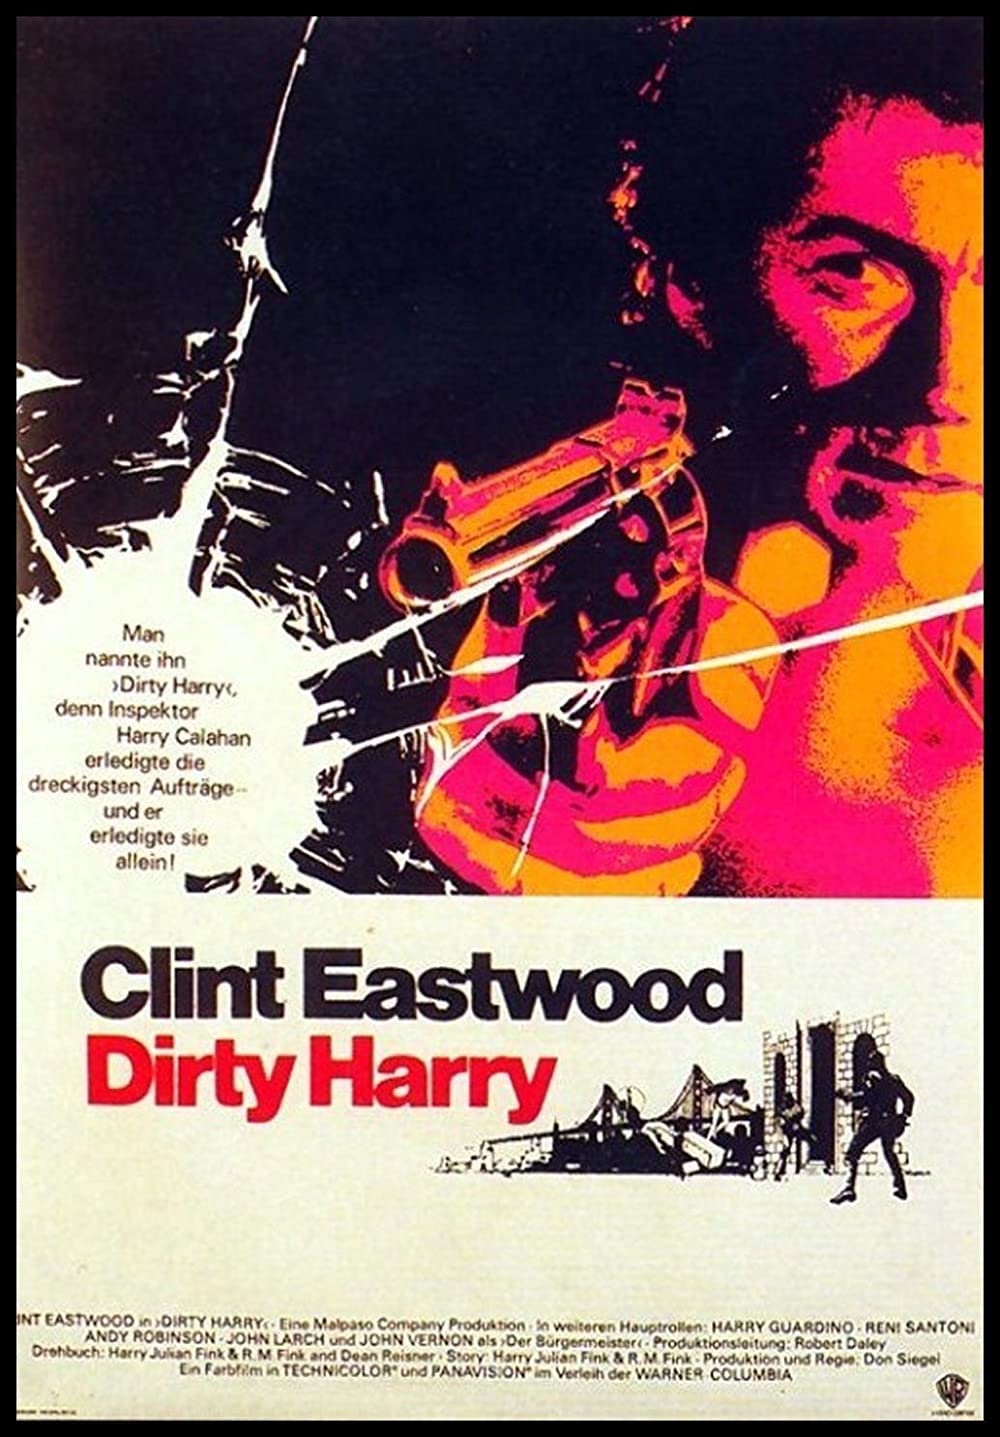 Filmbeschreibung zu Dirty Harry